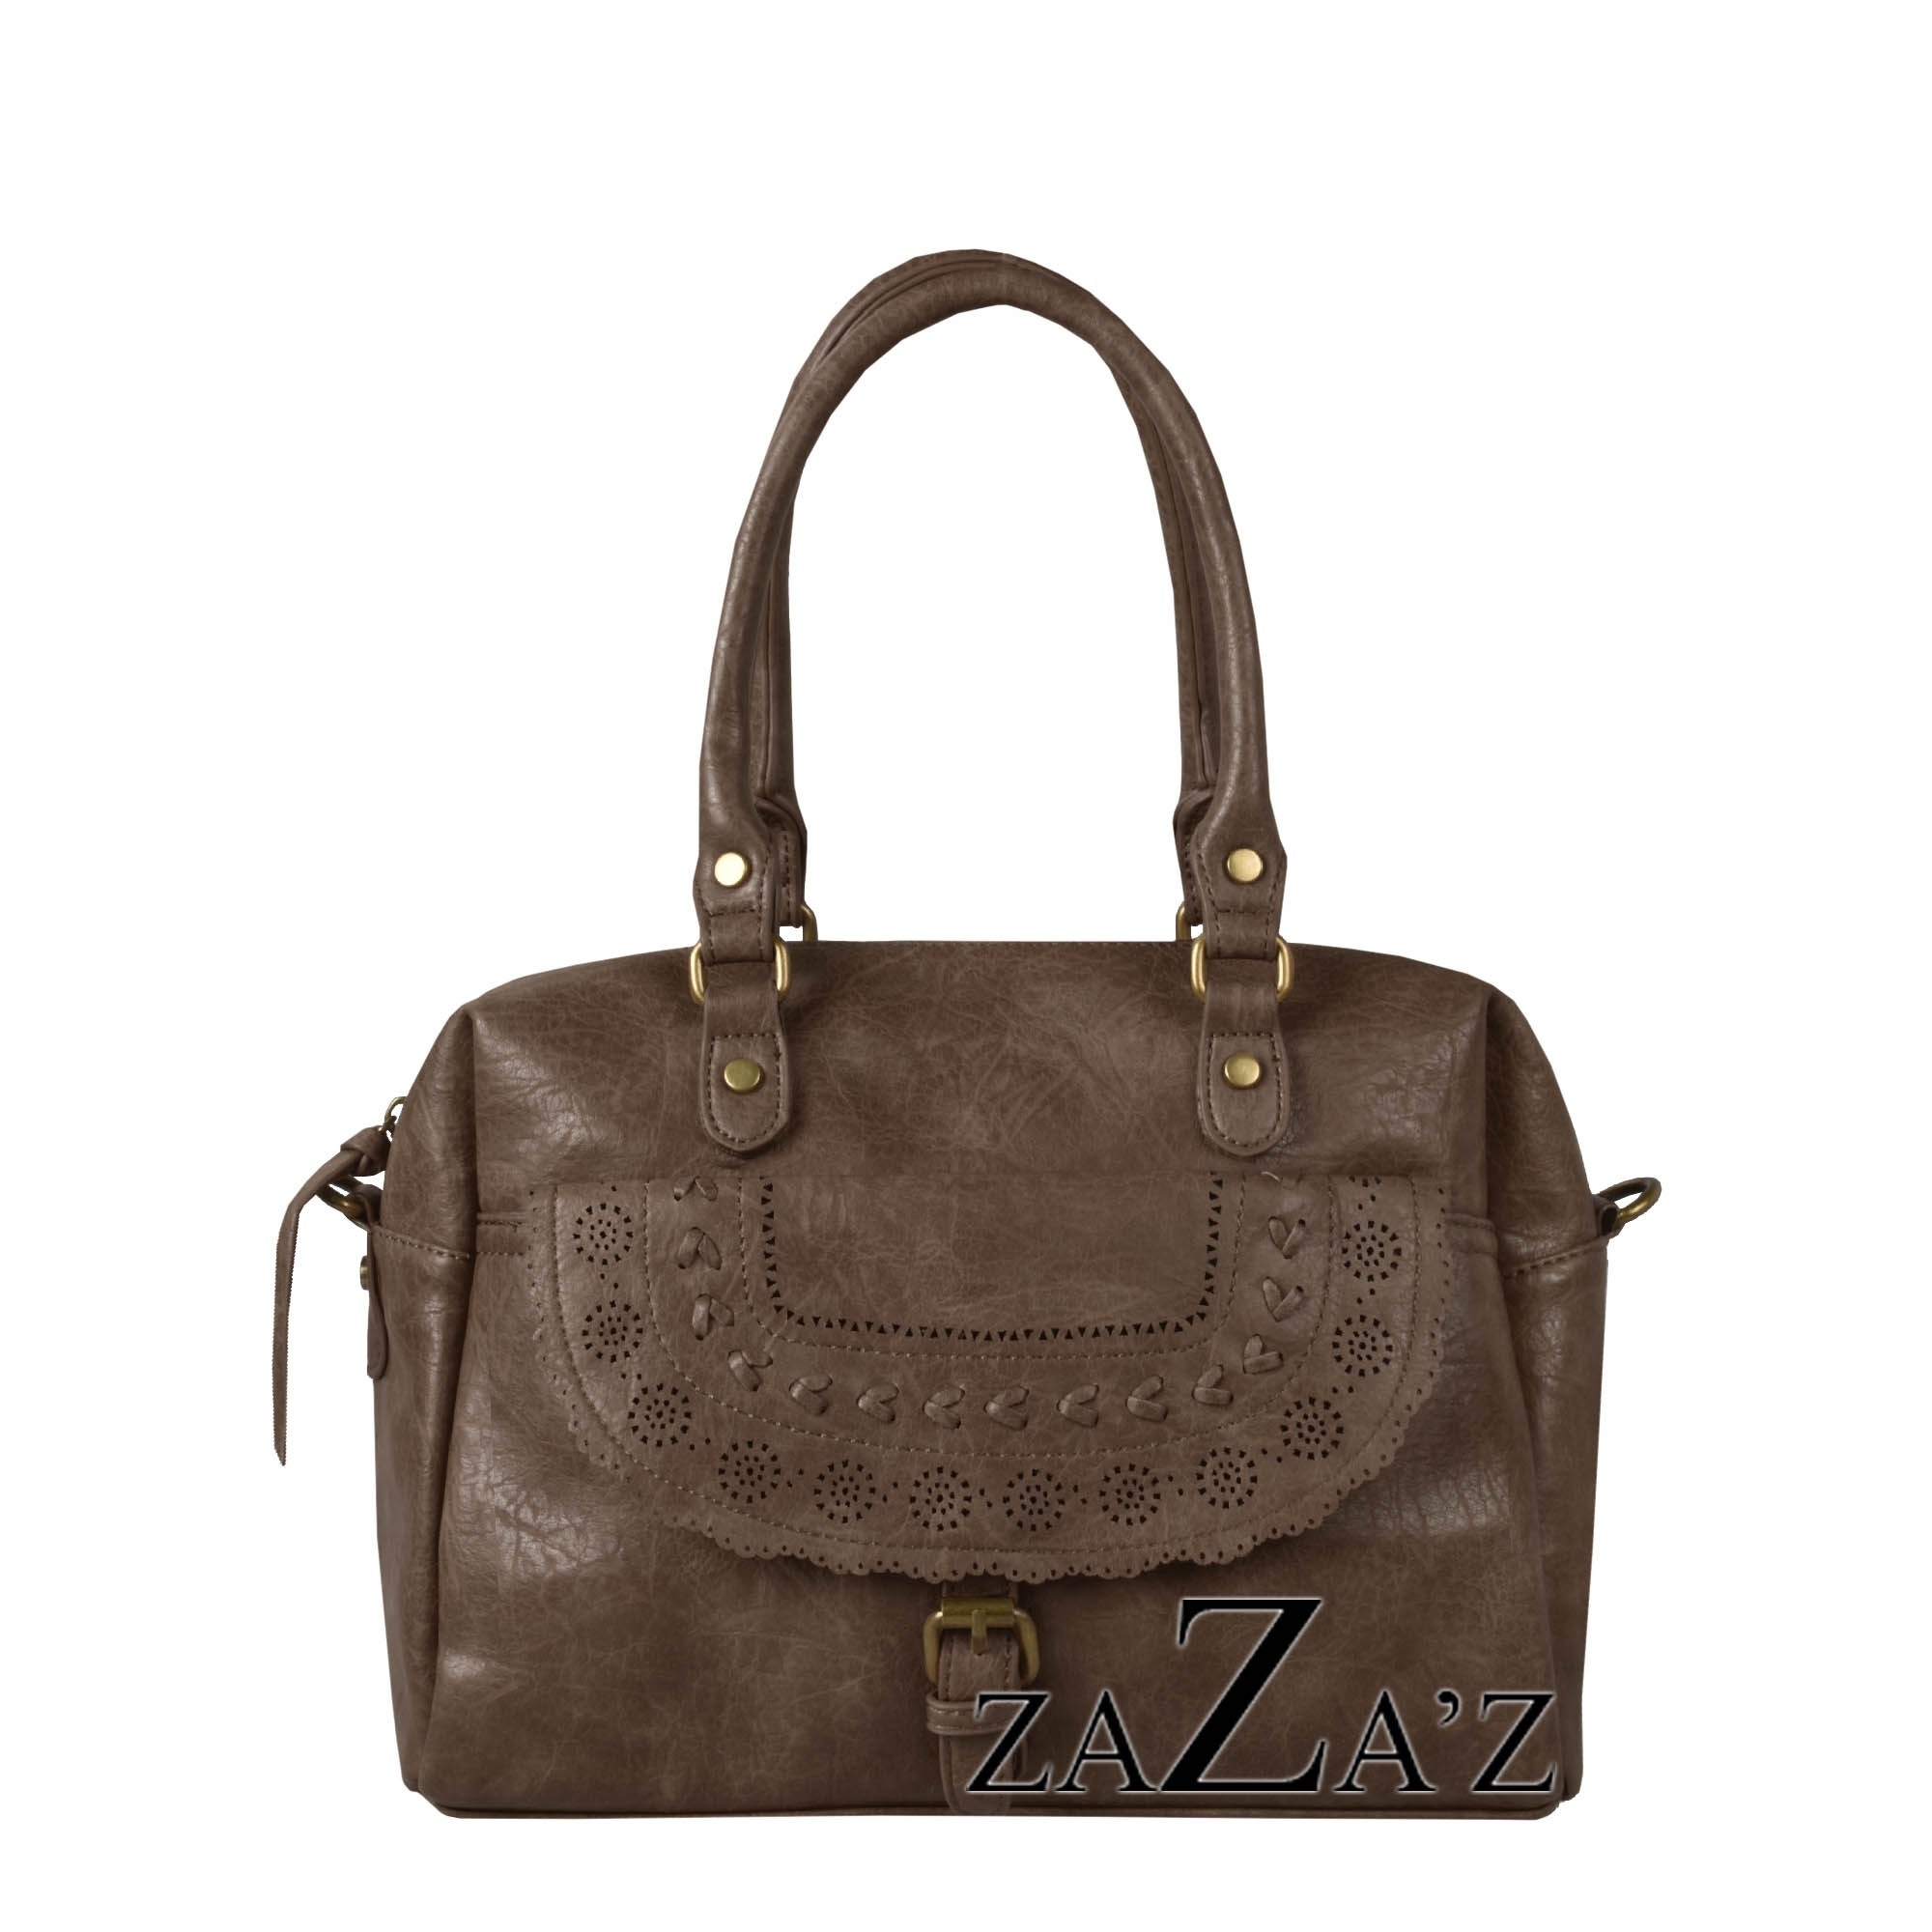 Zaza'z Brown bag